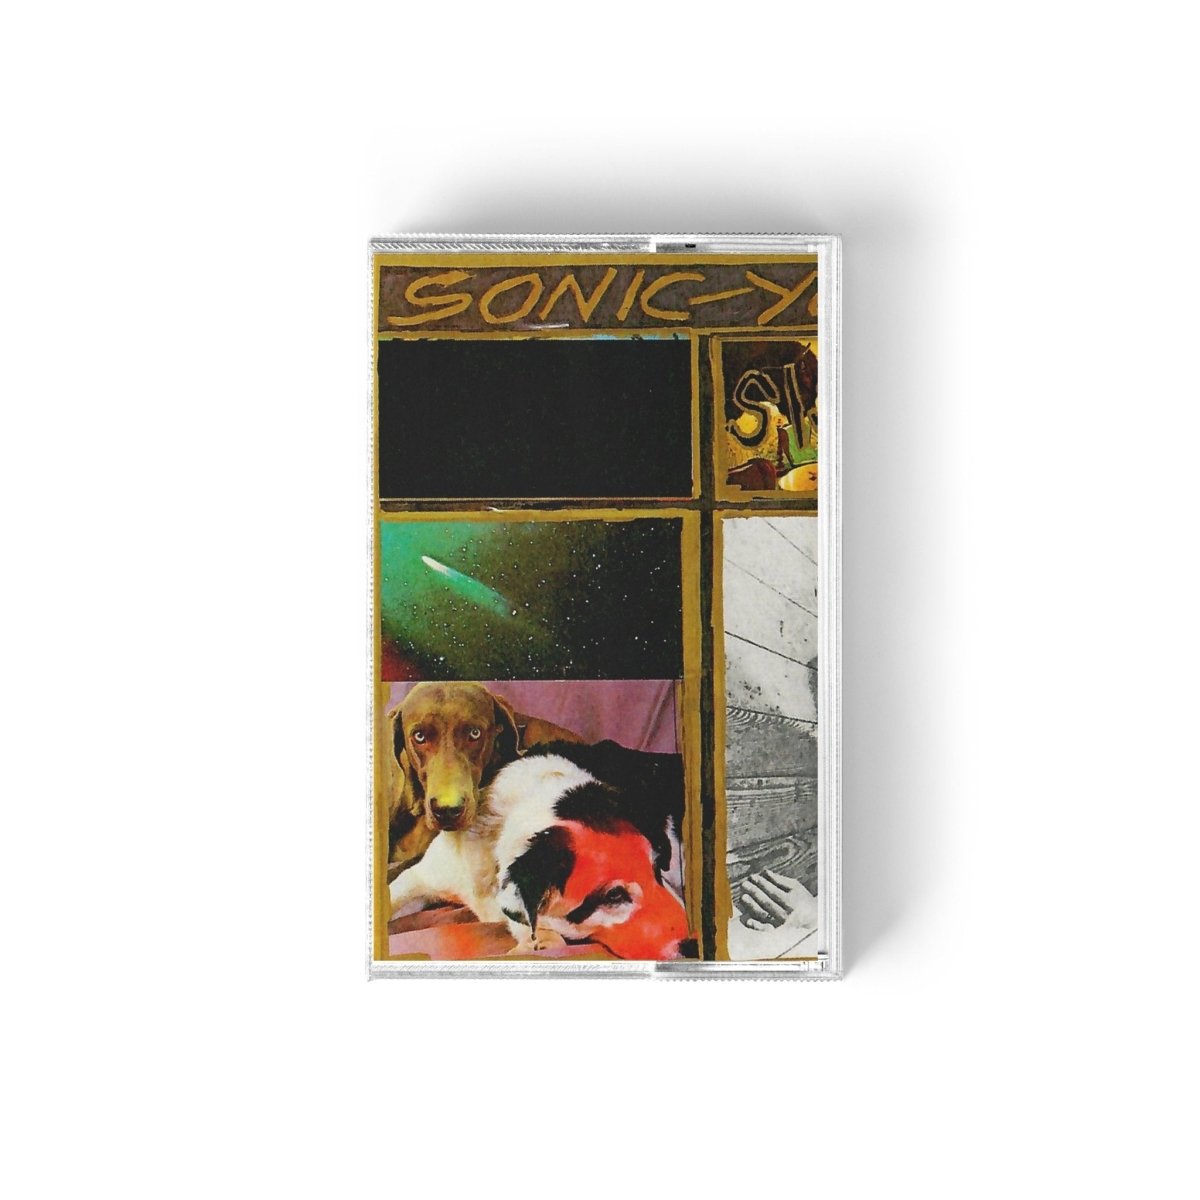 Sonic Youth - Sister Music Cassette Tapes Vinyl